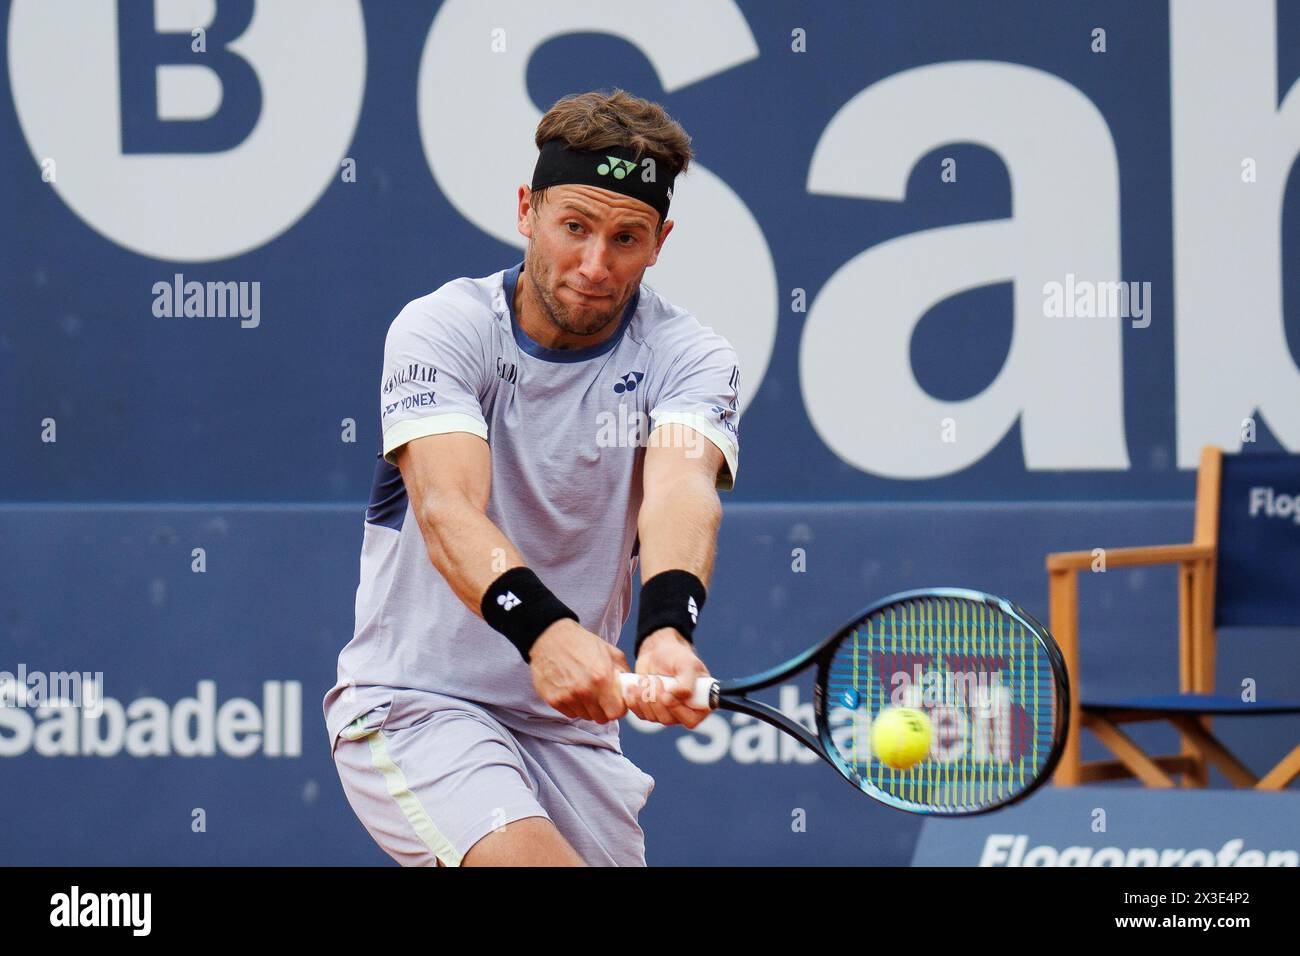 Barcelone, Espagne. 17 avril 2024. Casper Ruud en action lors du tournoi de tennis Barcelona Open Banc de Sabadell au Reial Club de Tennis Barce Banque D'Images